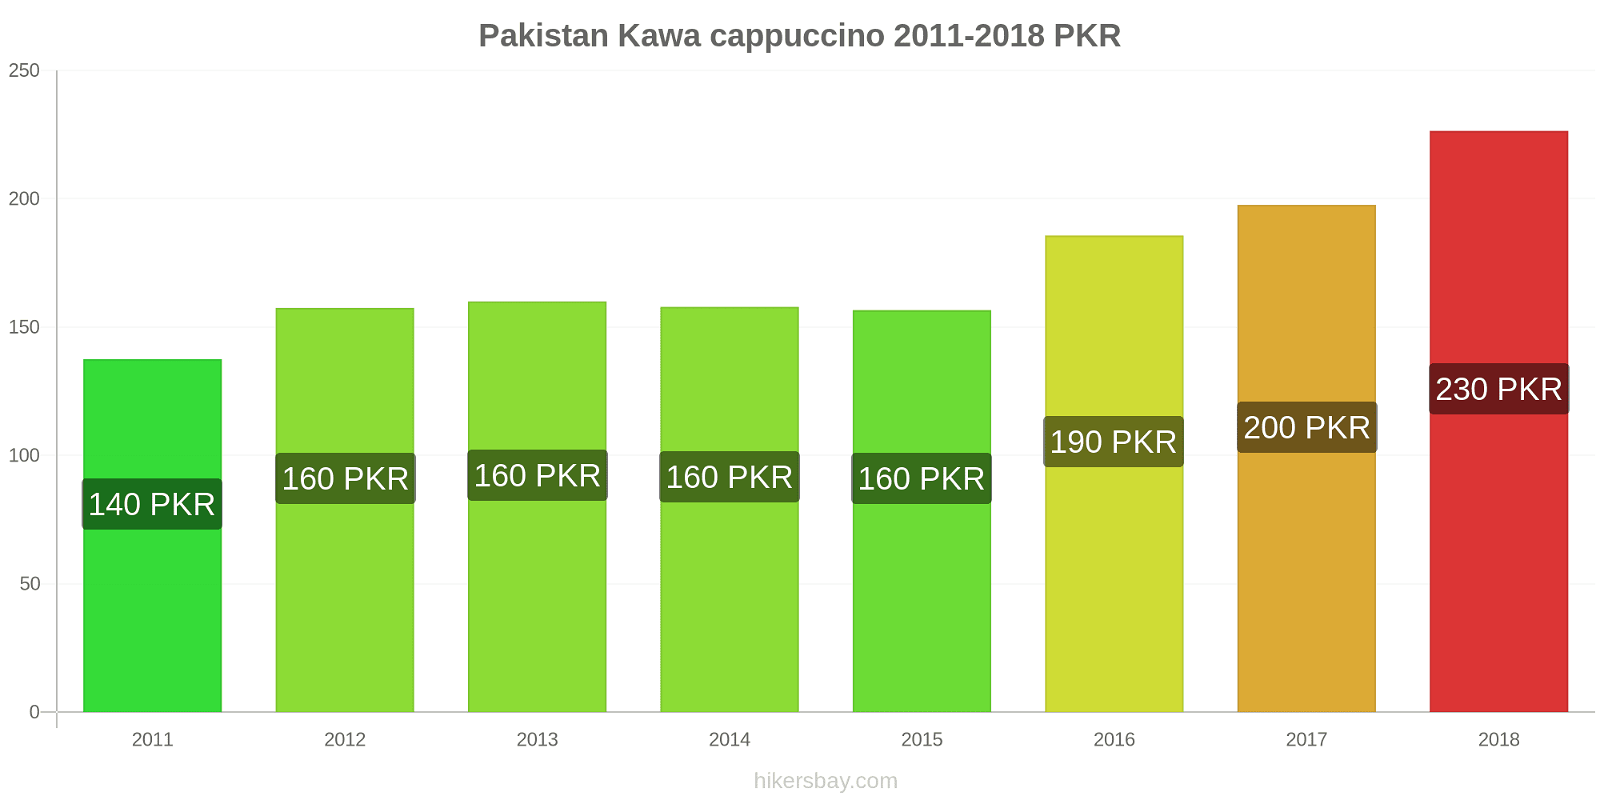 Pakistan zmiany cen Kawa cappuccino hikersbay.com